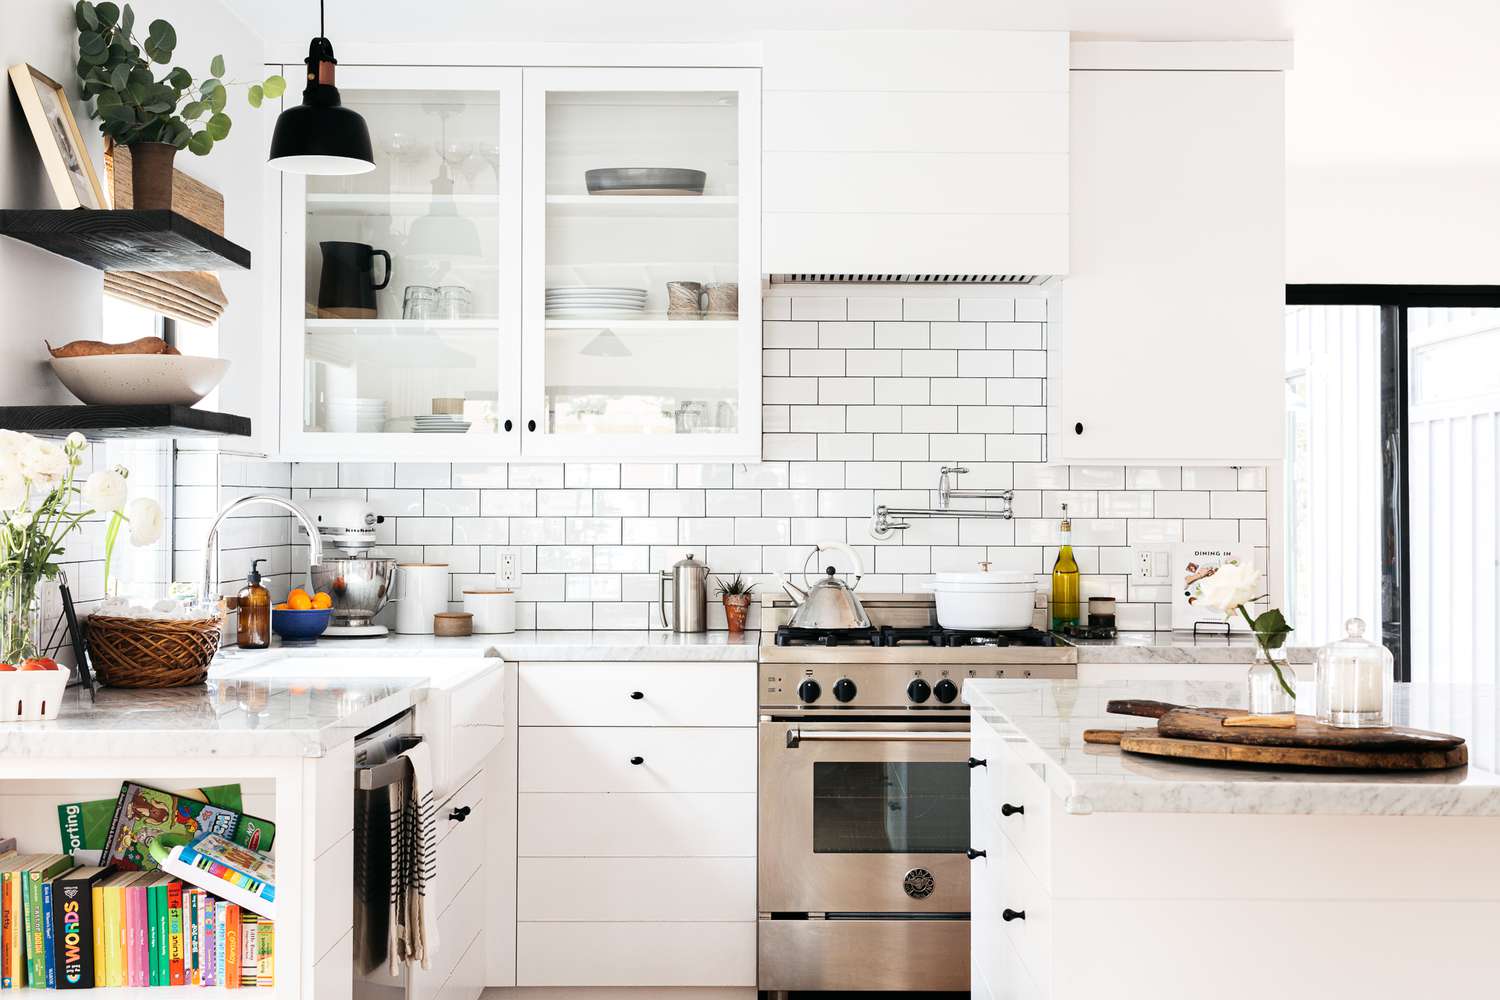 Cocina blanca moderna decorada con pared de ladrillo detrás del horno de acero inoxidable 